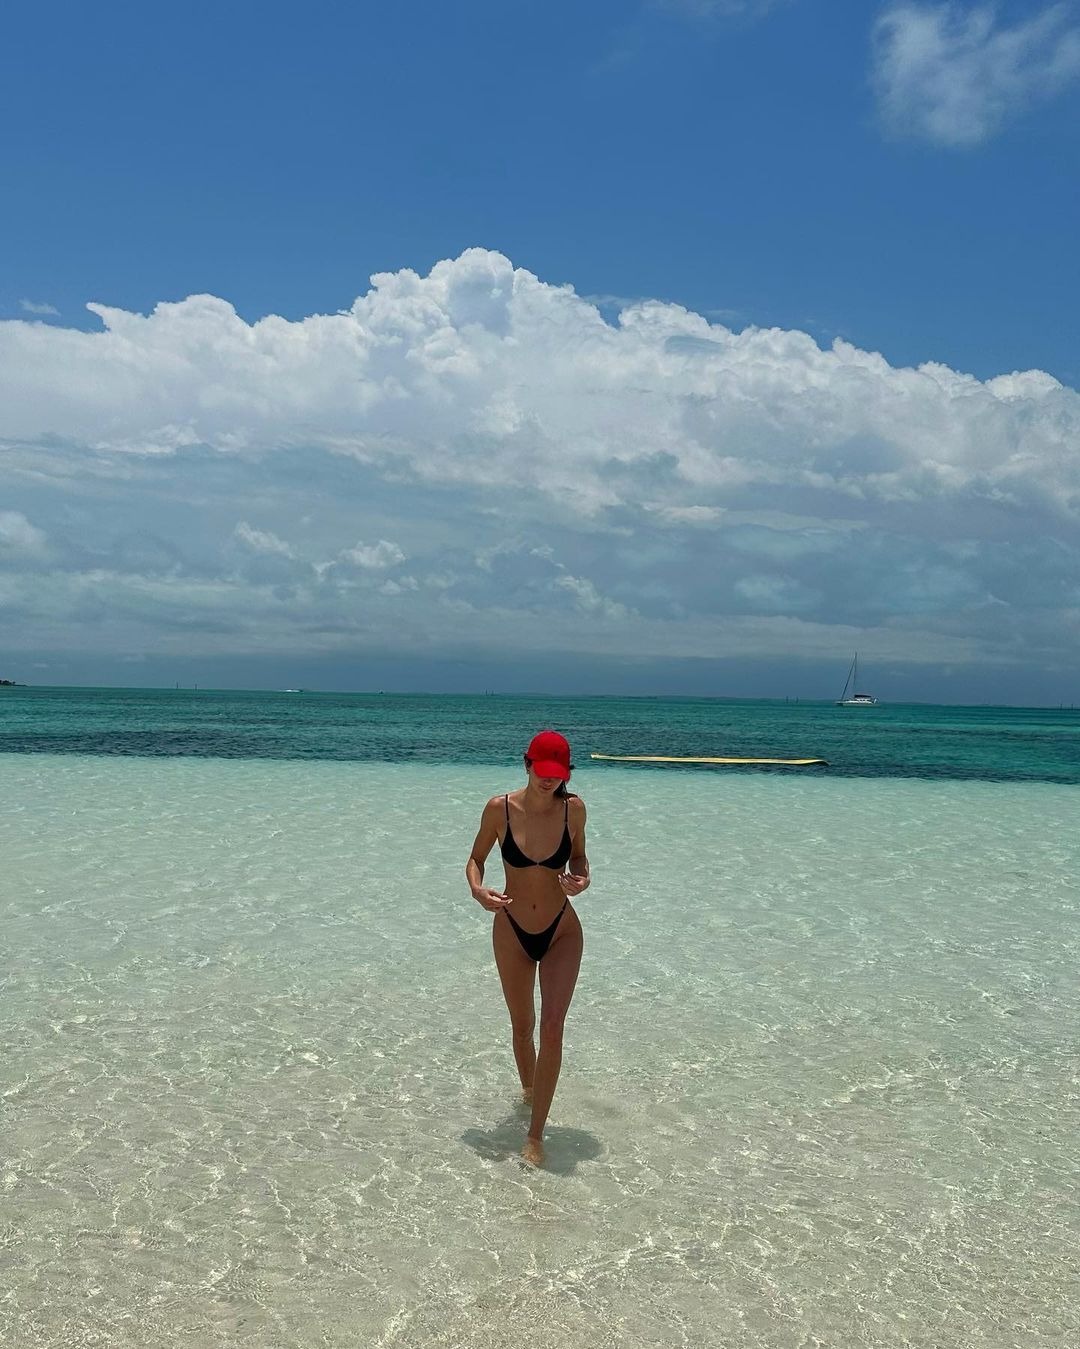 Bad Bunny y Kendall Jenner: Así son sus vacaciones en playas de Puerto Rico